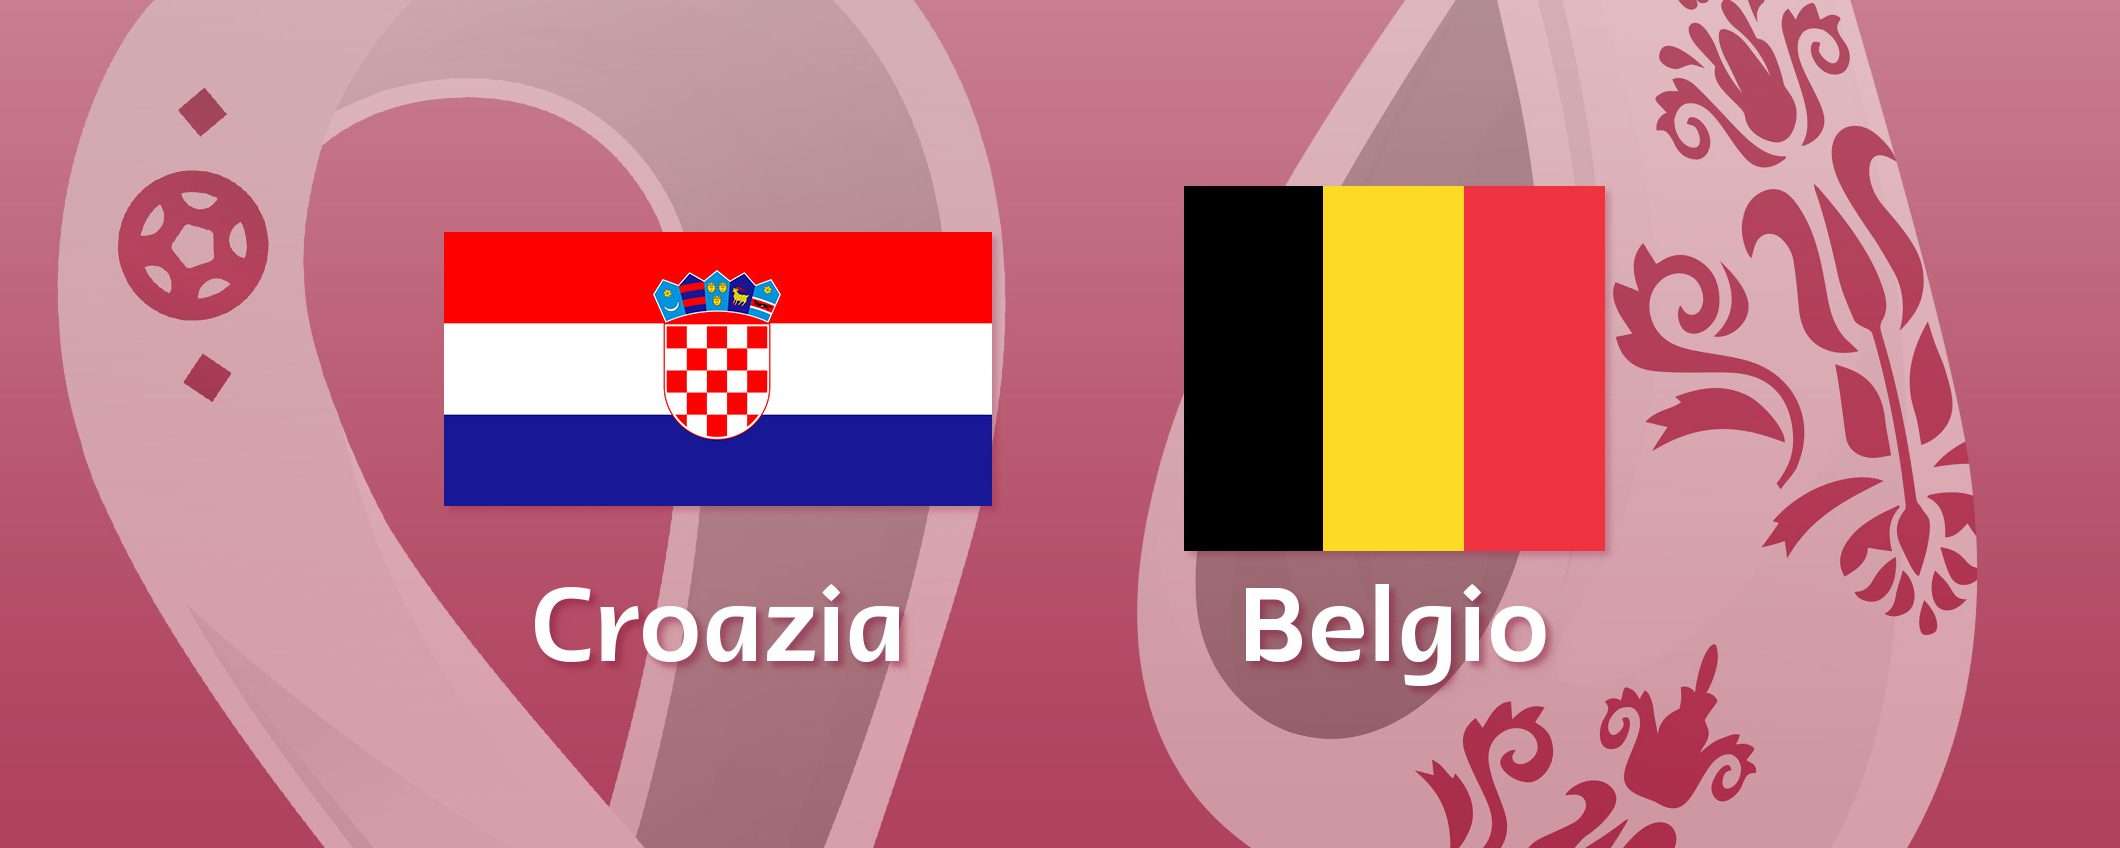 Come vedere Croazia-Belgio in streaming